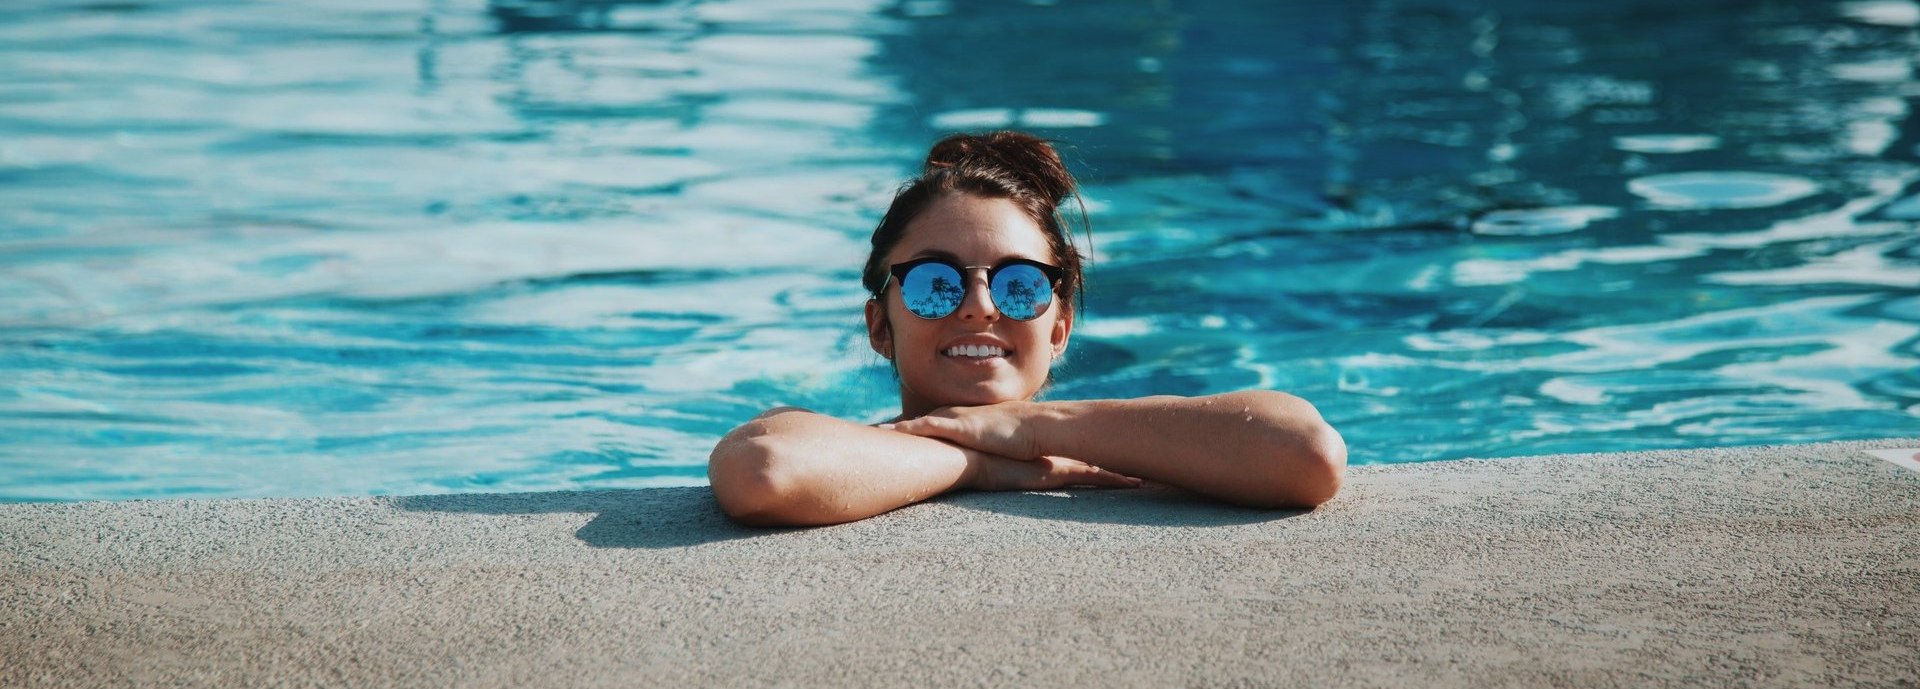 Woman Enjoying Swimming Pool